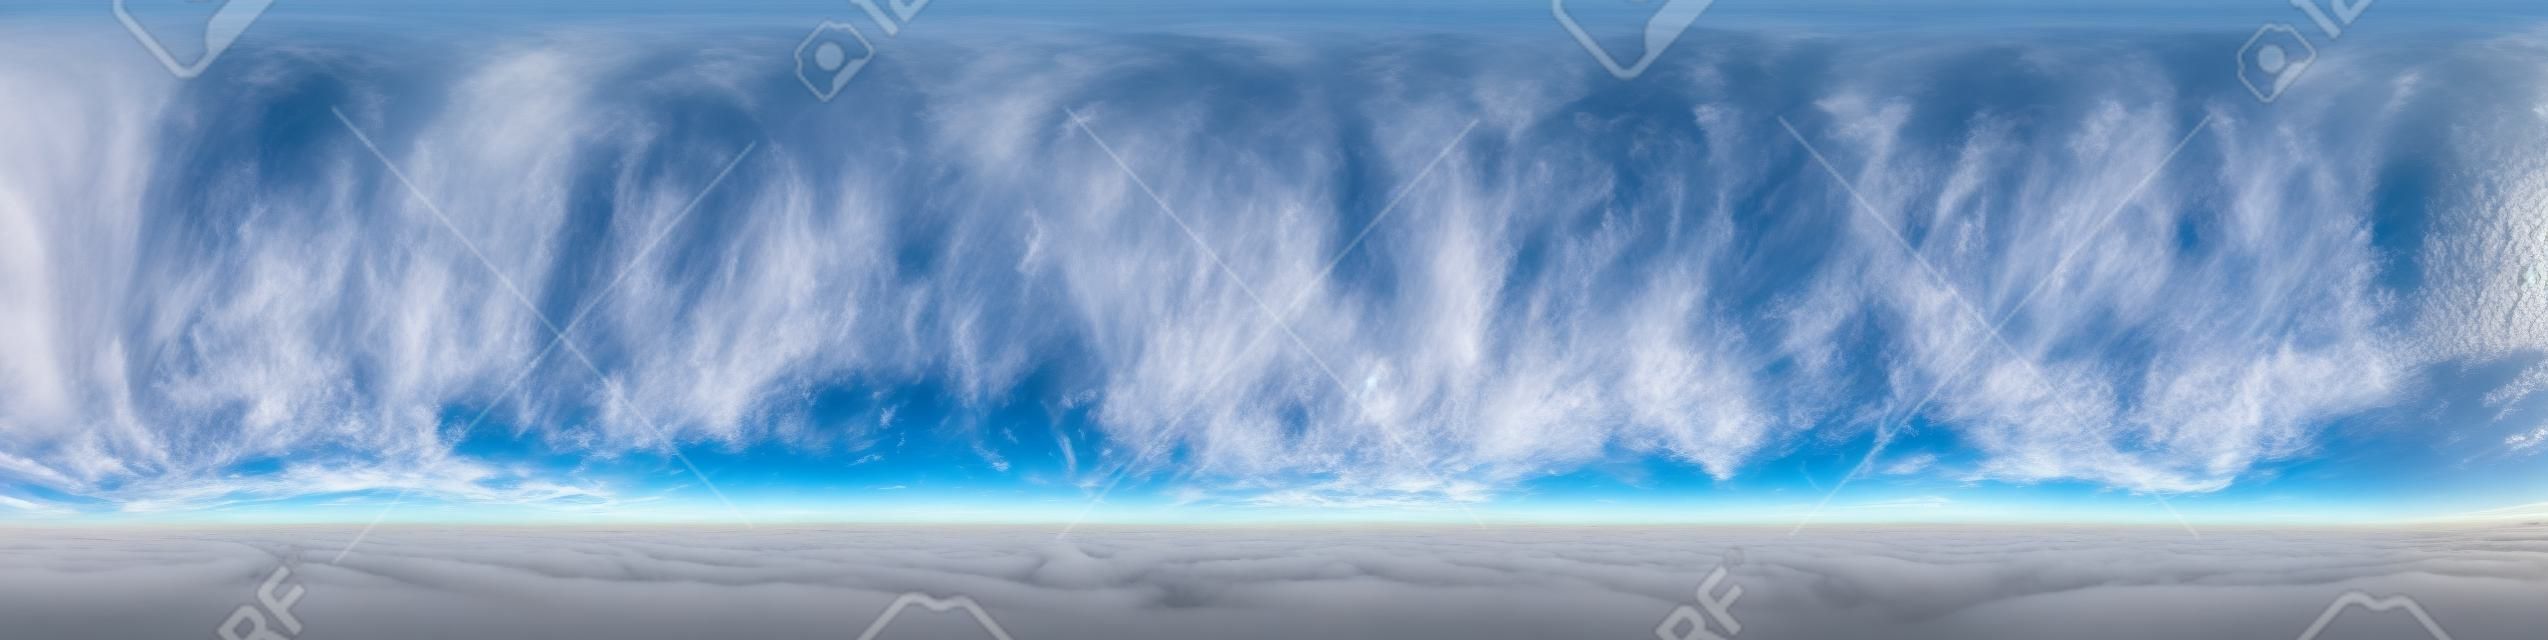 Nahtloser bewölkter blauer himmel hdr-panorama 360-grad-winkelansicht mit zenit und schönen wolken zur verwendung in 3d-grafiken als himmelskuppel oder bearbeiten von drohnenaufnahmen